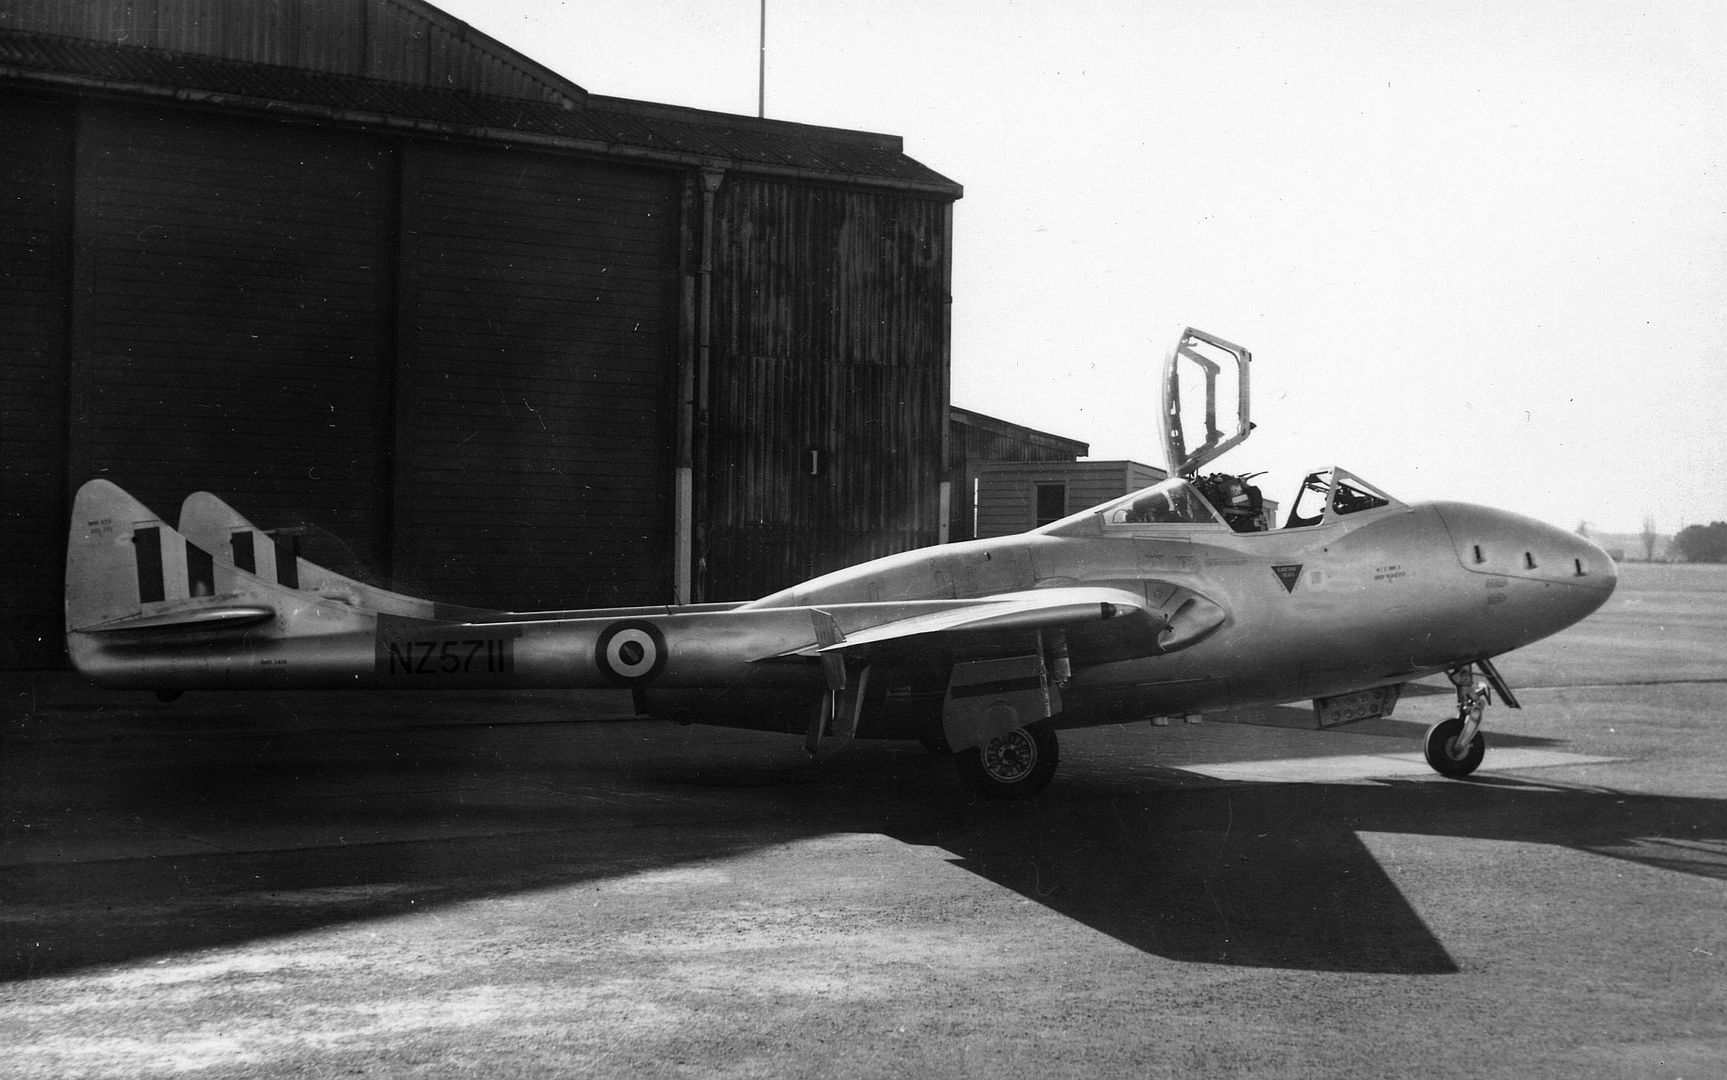 Vampire T11 NZ 5711 In Front Of A Hangar